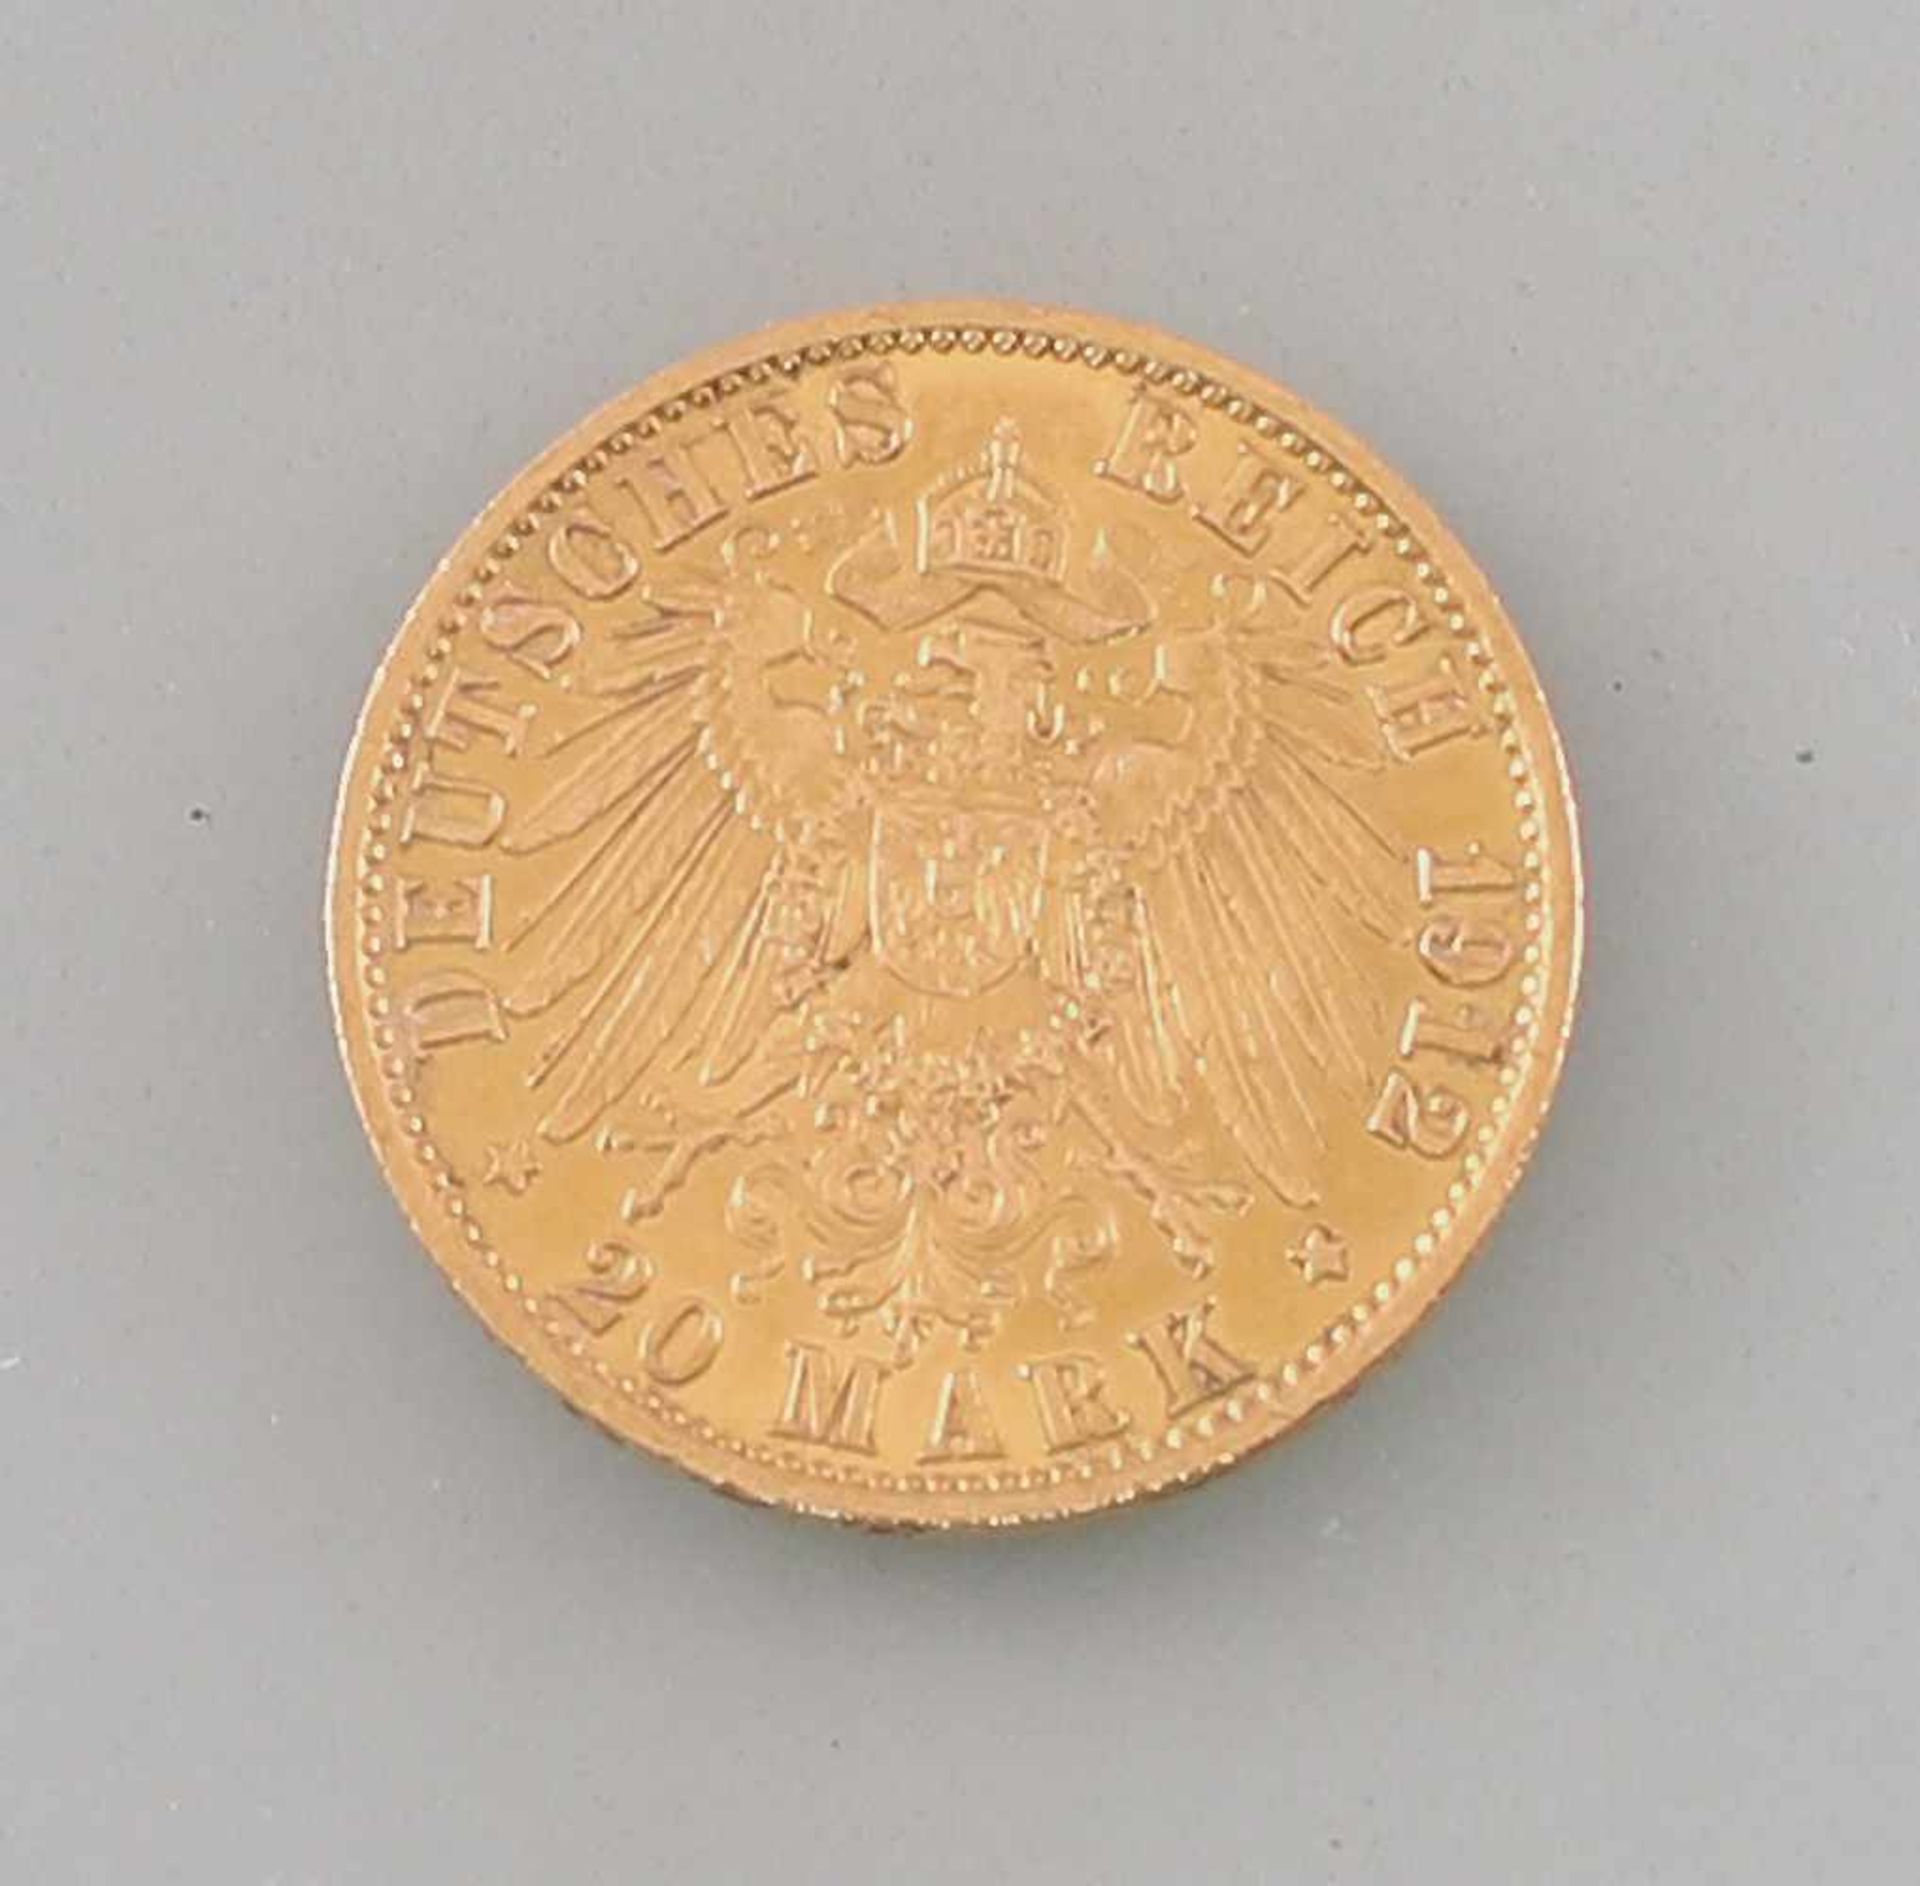 Goldmünze 20 Mark Deutsches Reich Preussen 1912900er Gold, 7,86 g, D 22,5 mm, 20 Mark Deutsches - Bild 2 aus 2